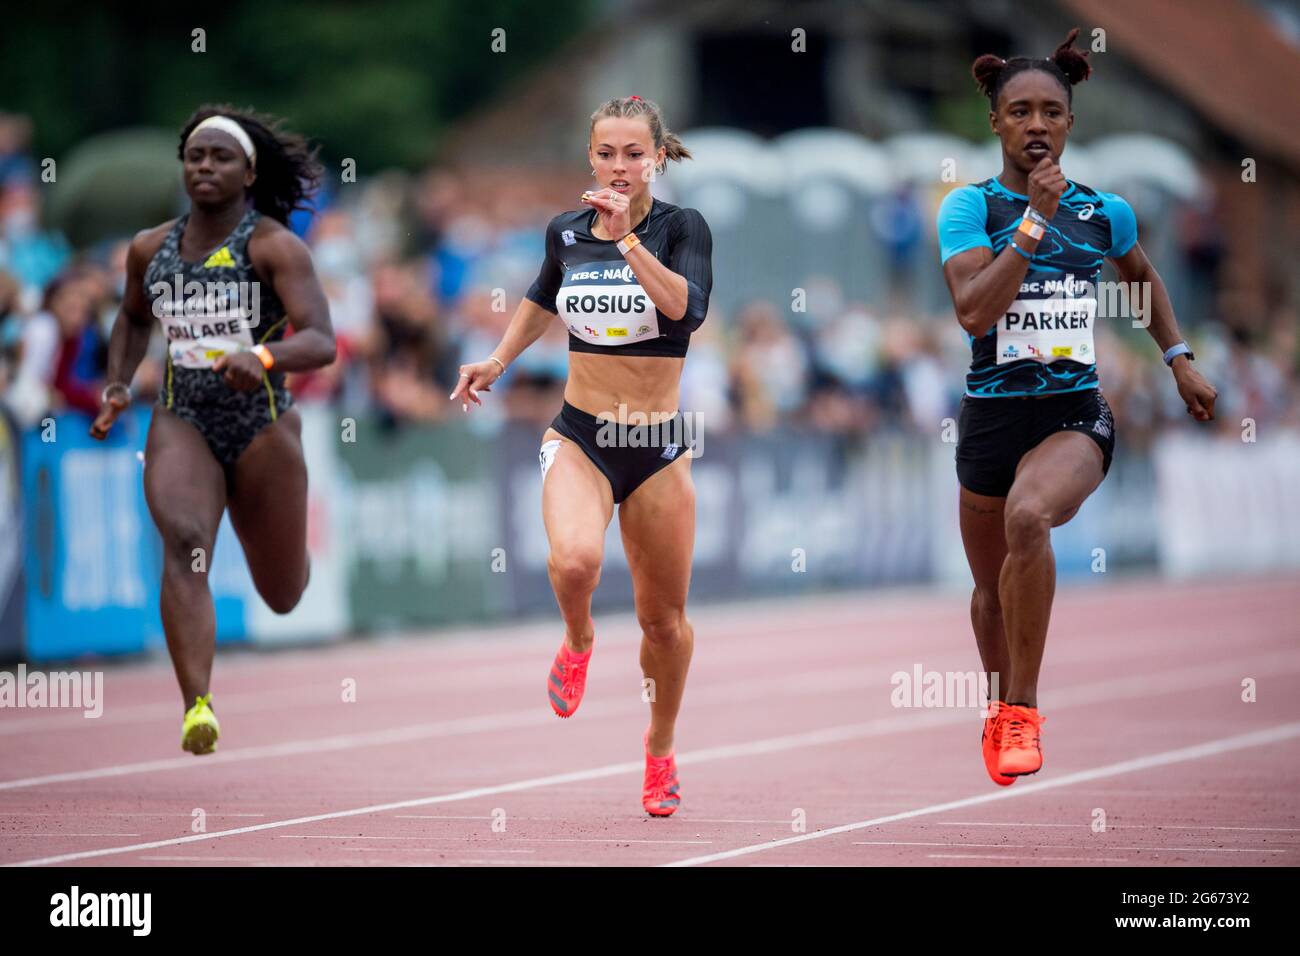 Die belgische Athletin Mariam Oulare, die Belgierin Rani Rosius und Kiara Parker, die während des 100-m-Rennens beim „KBC Nacht van de Atletiek“-Athlet in Aktion zu sehen waren Stockfoto